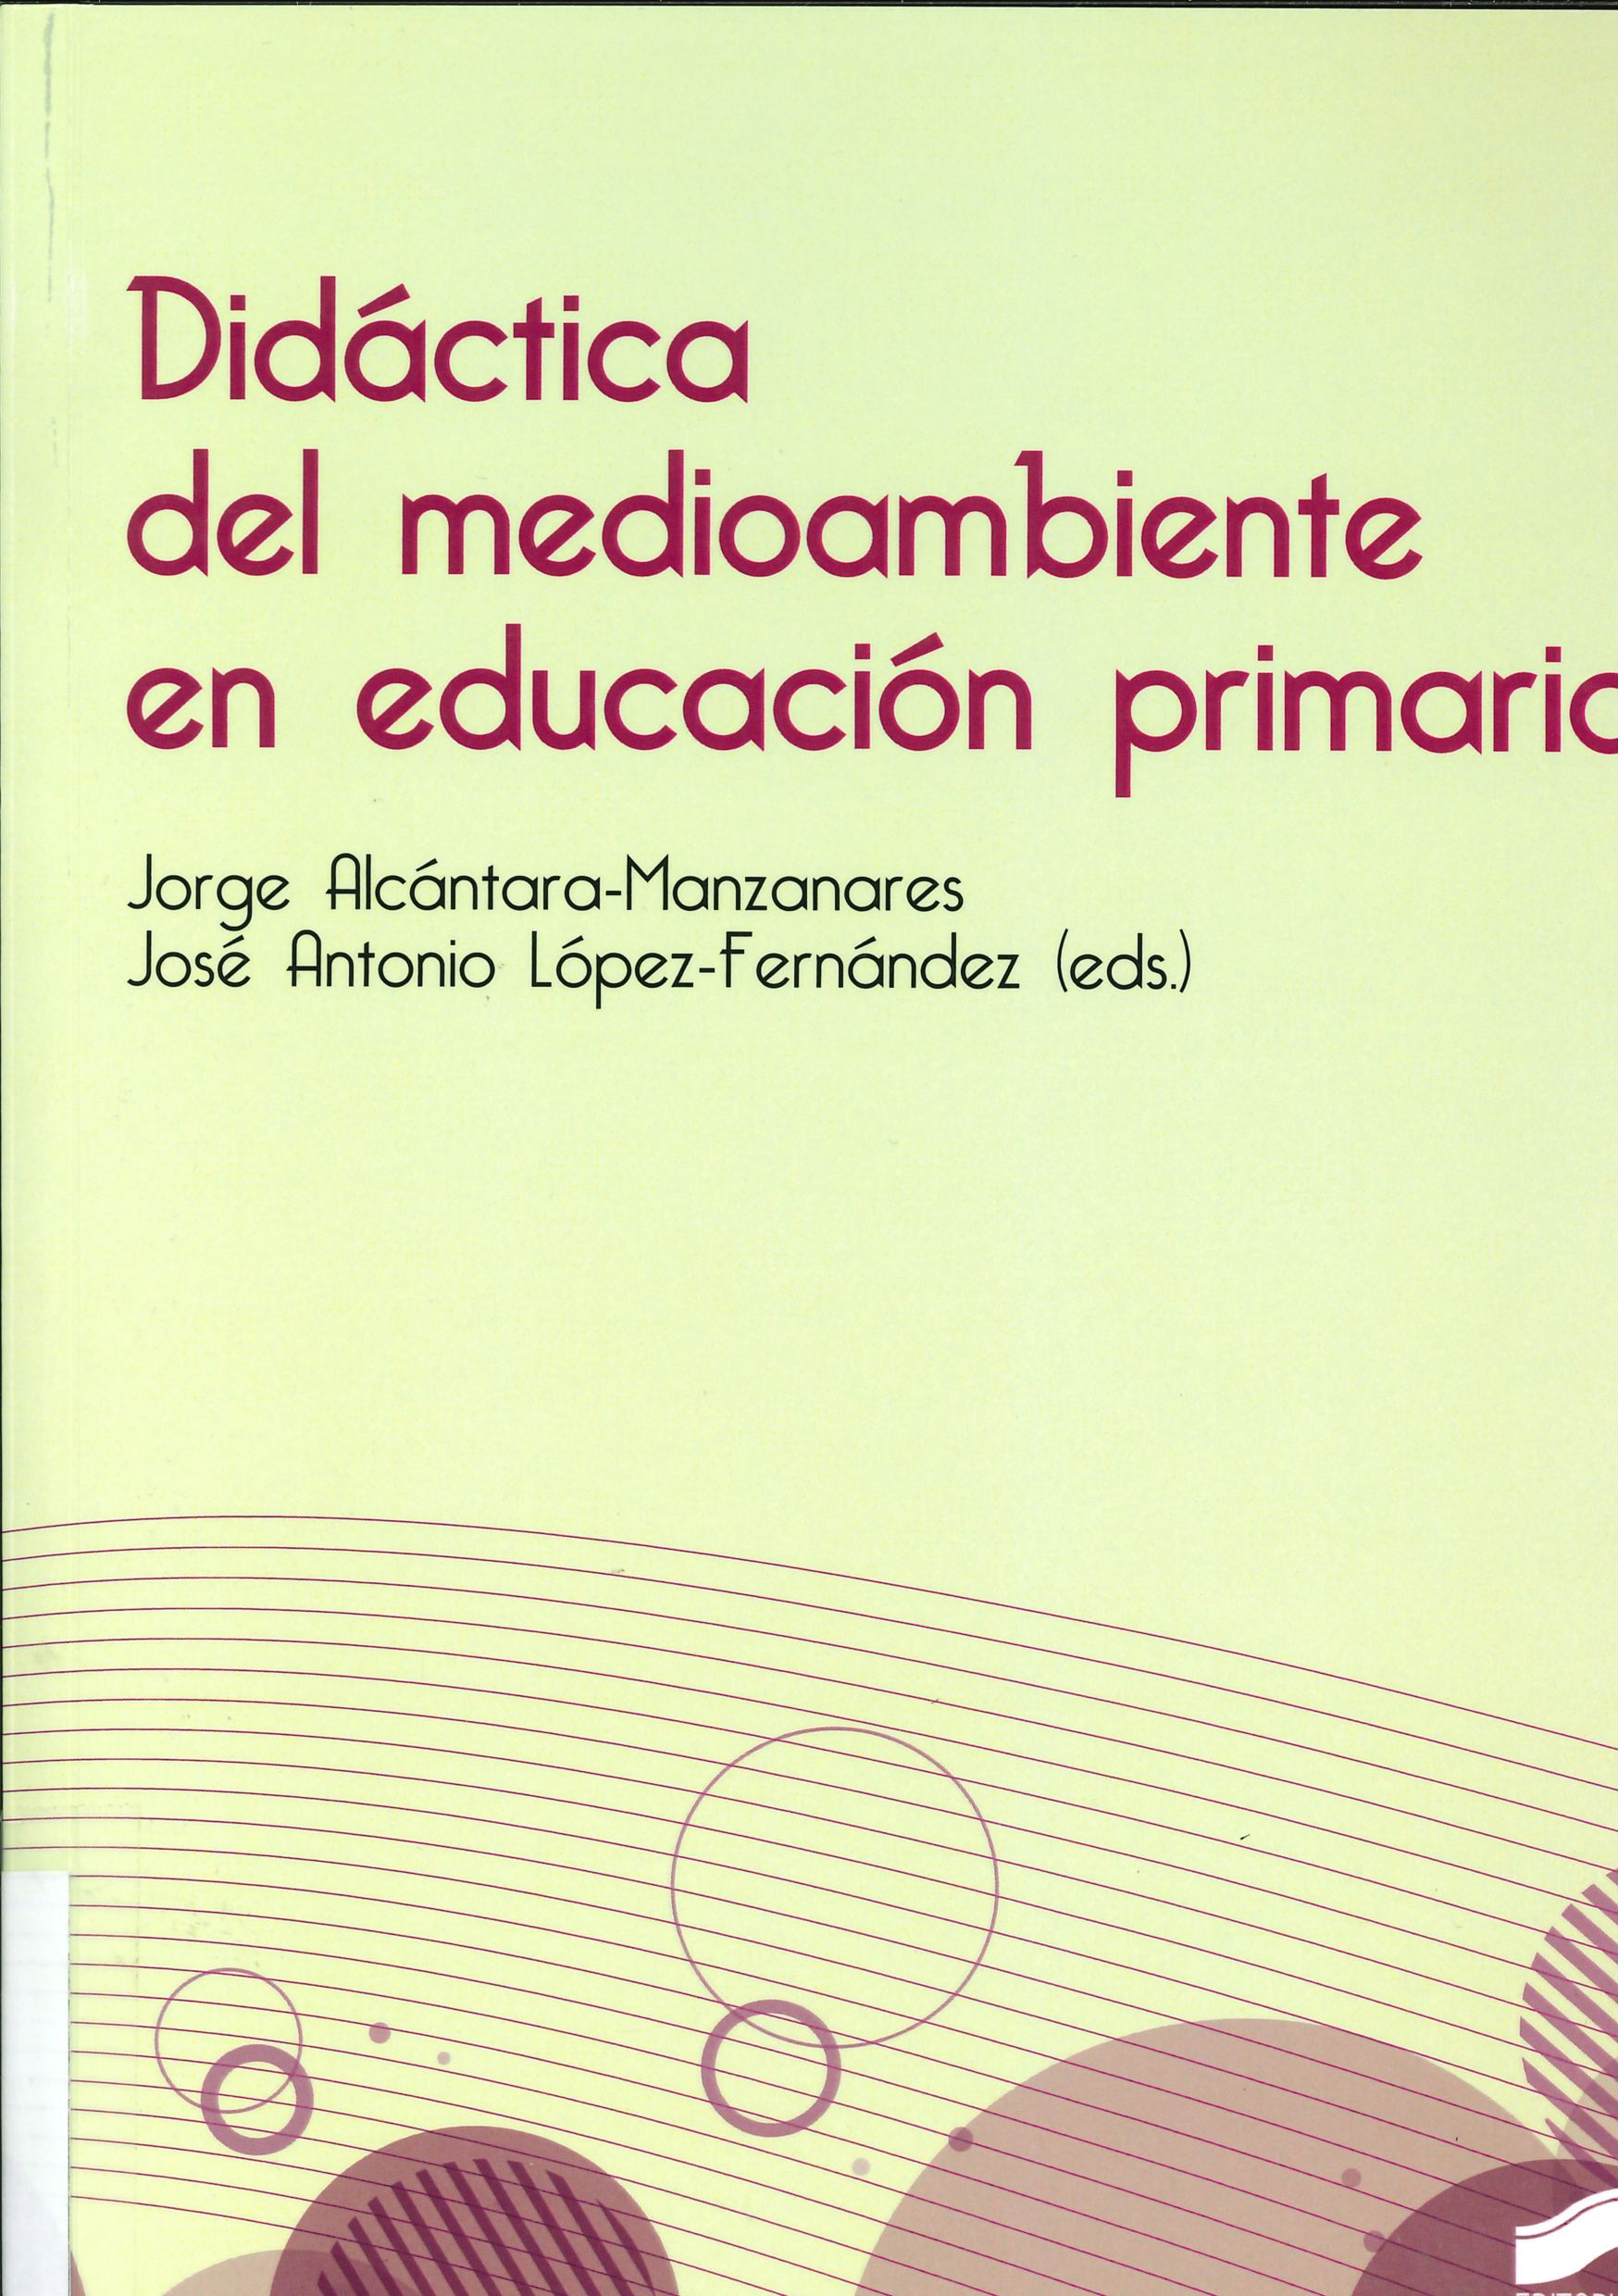 Imagen de portada del libro Didáctica del medioambiente en educación primaria